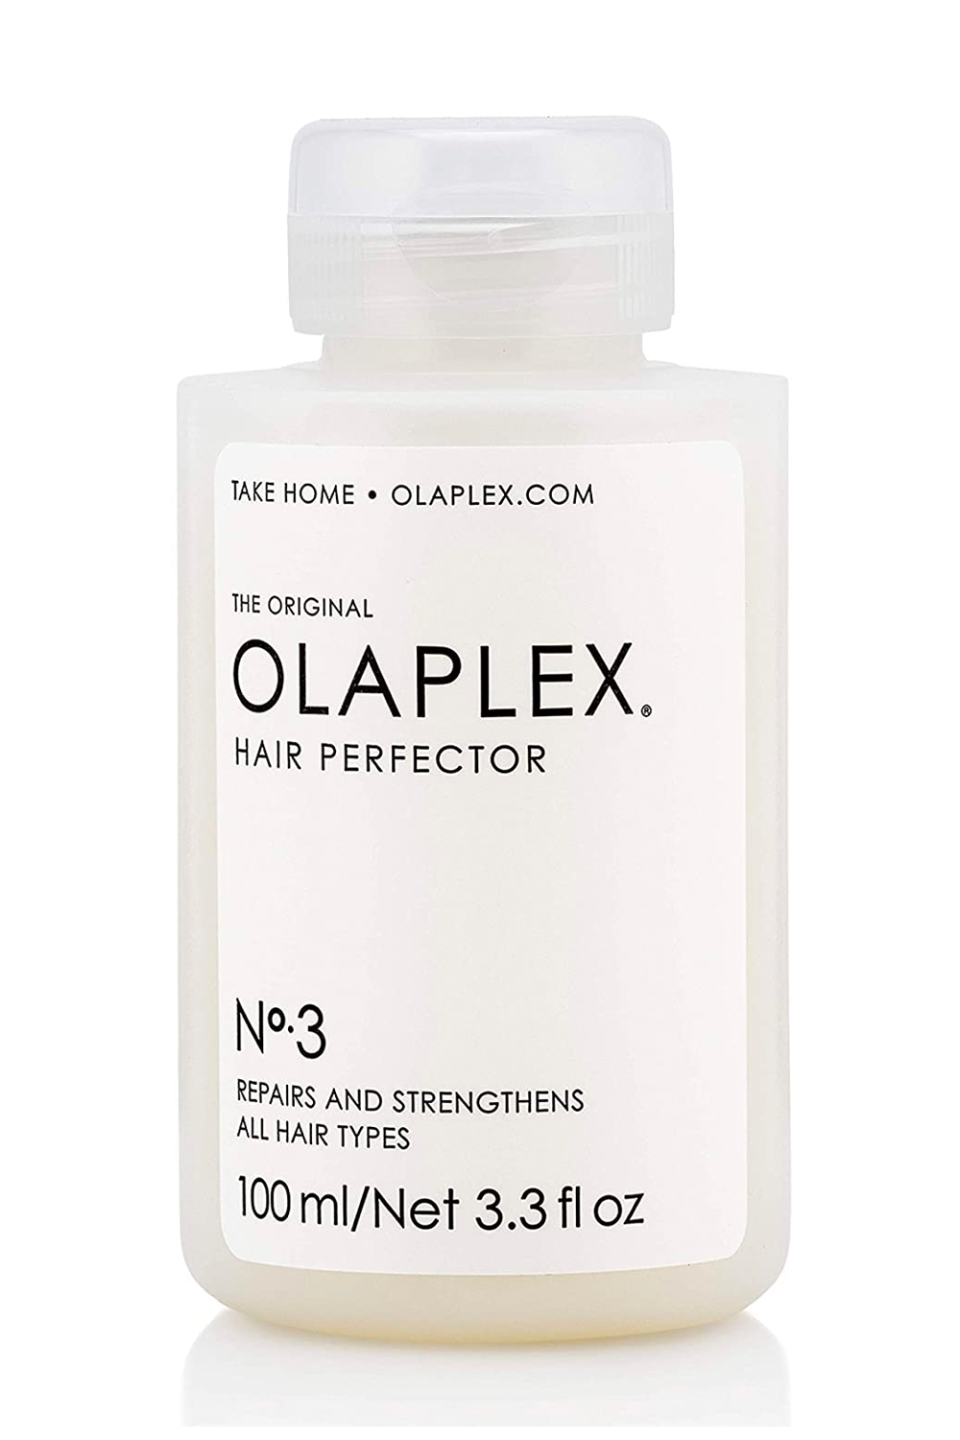 3) Olaplex No.3 Hair Perfector